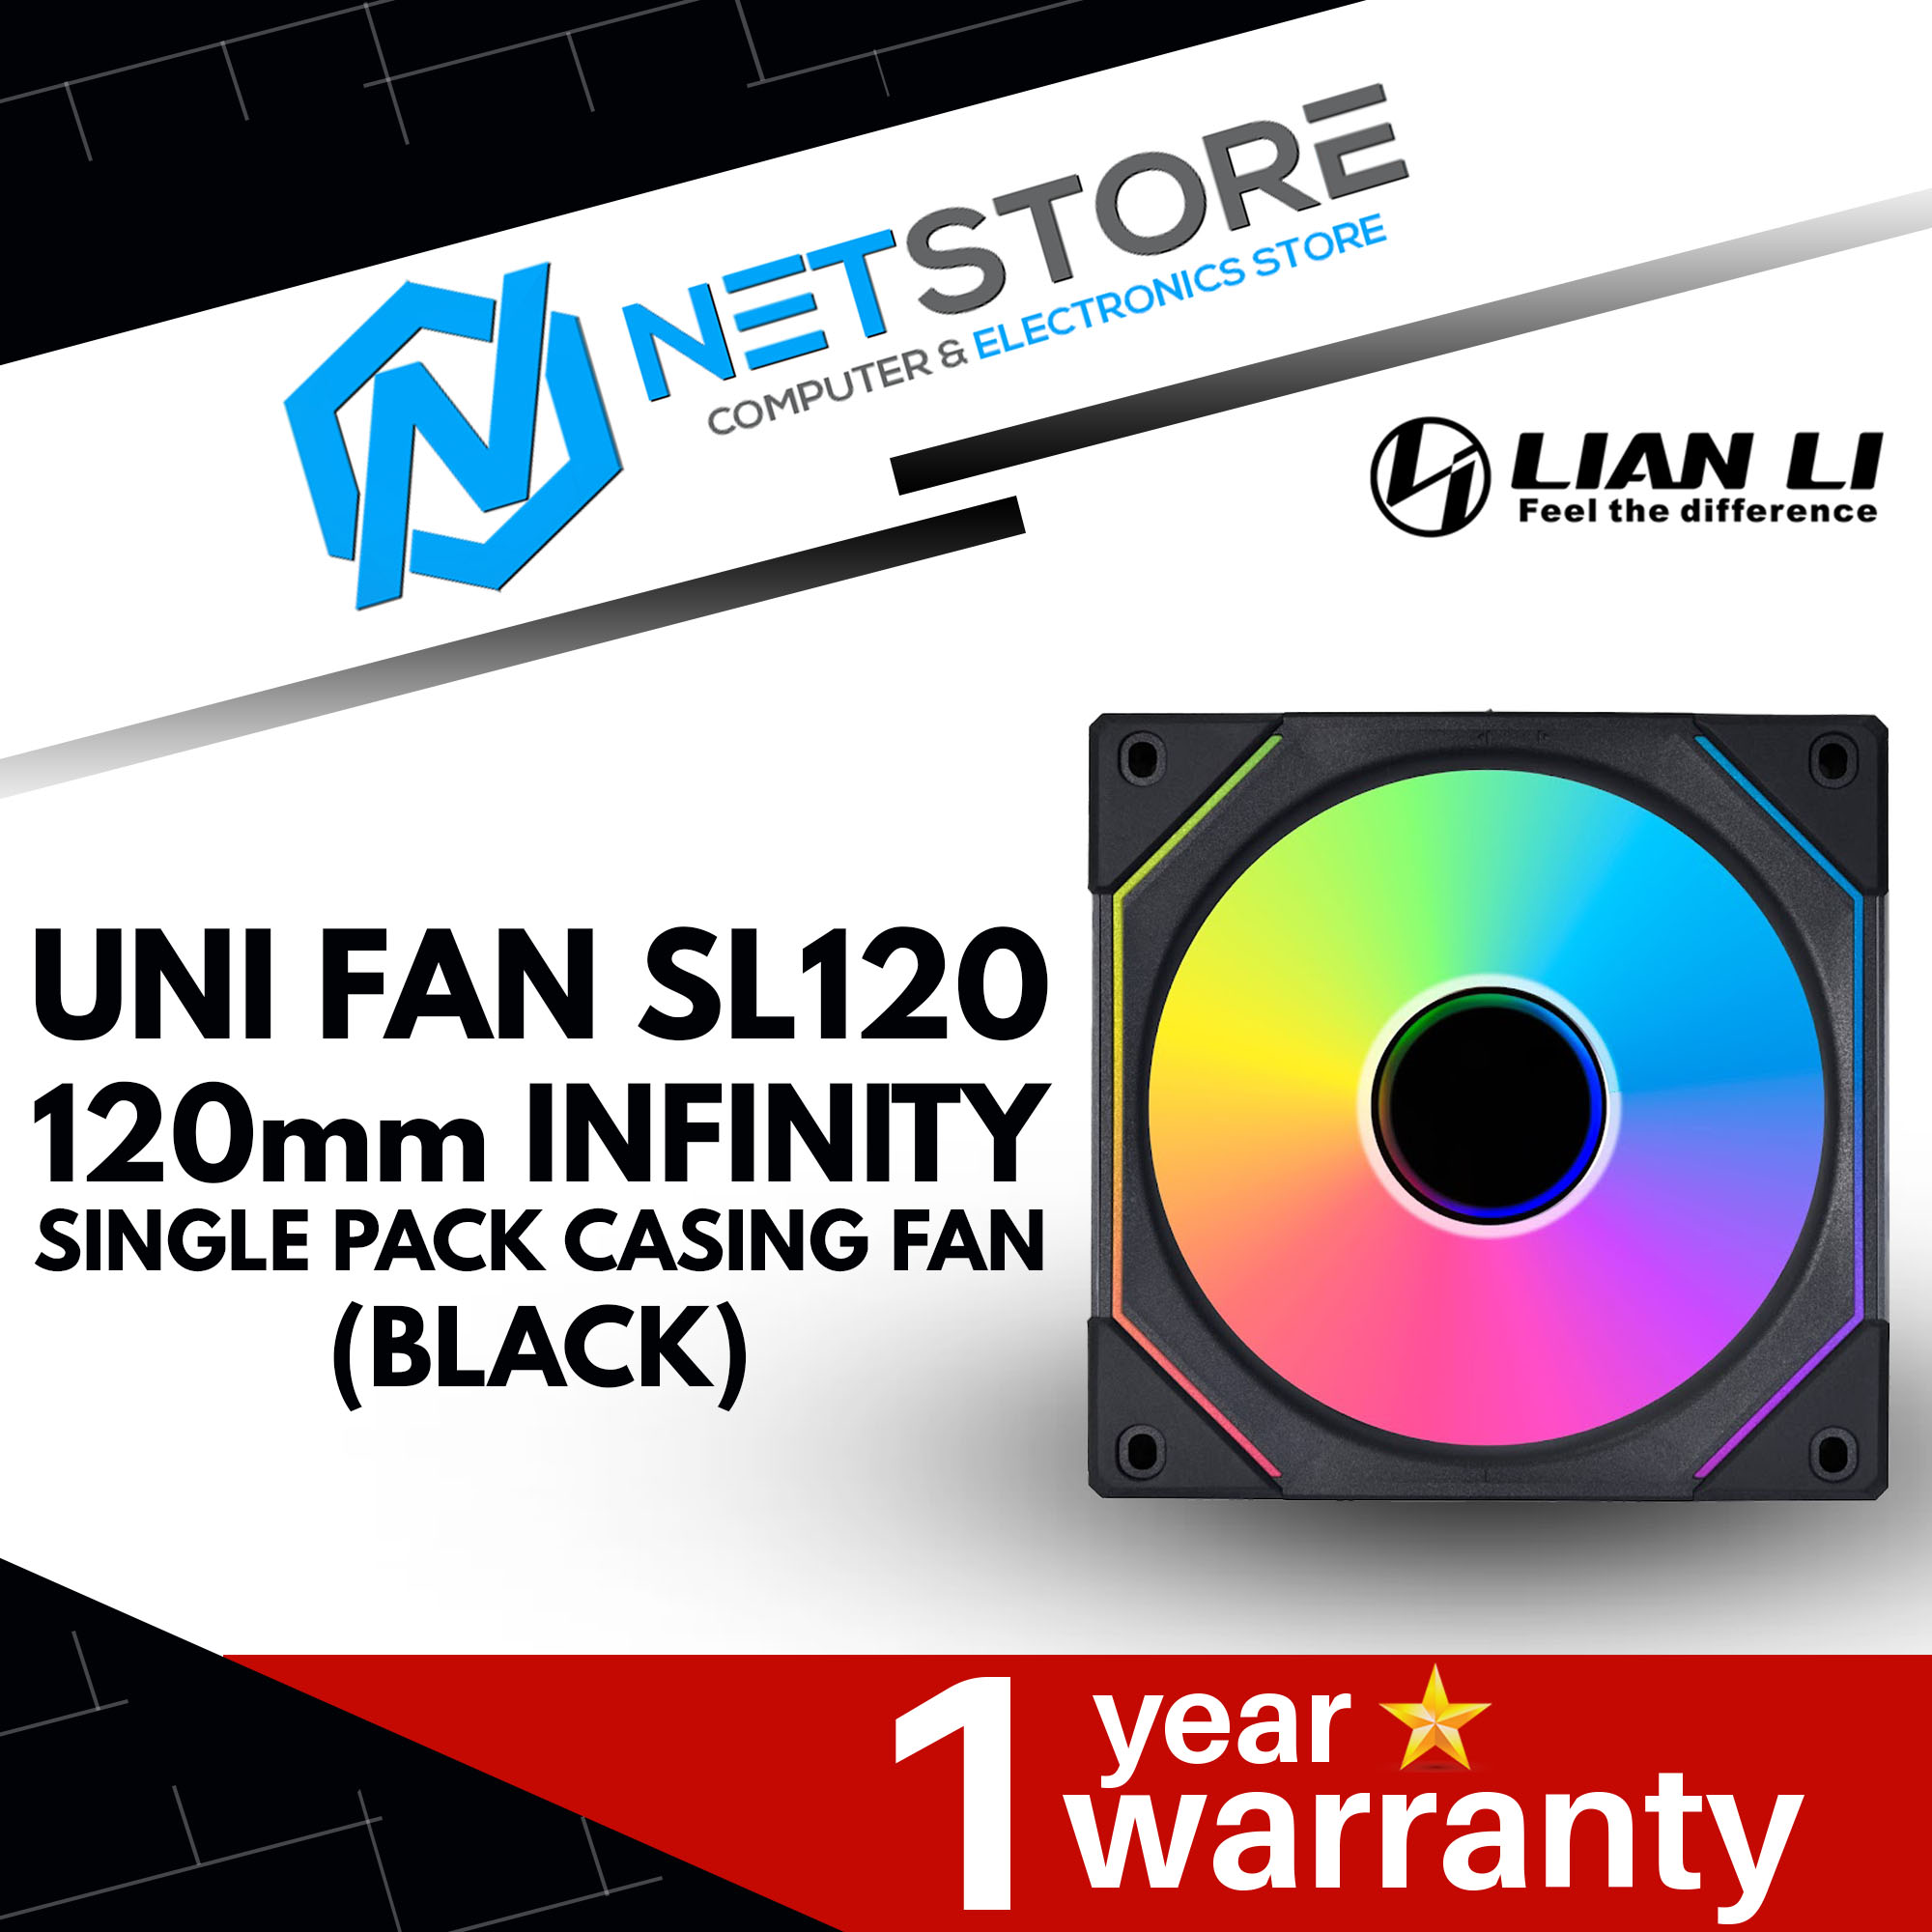 LIAN LI UNI FAN SL120 120mm INFINITY SINGLE PACK CASING FAN (BLACK)